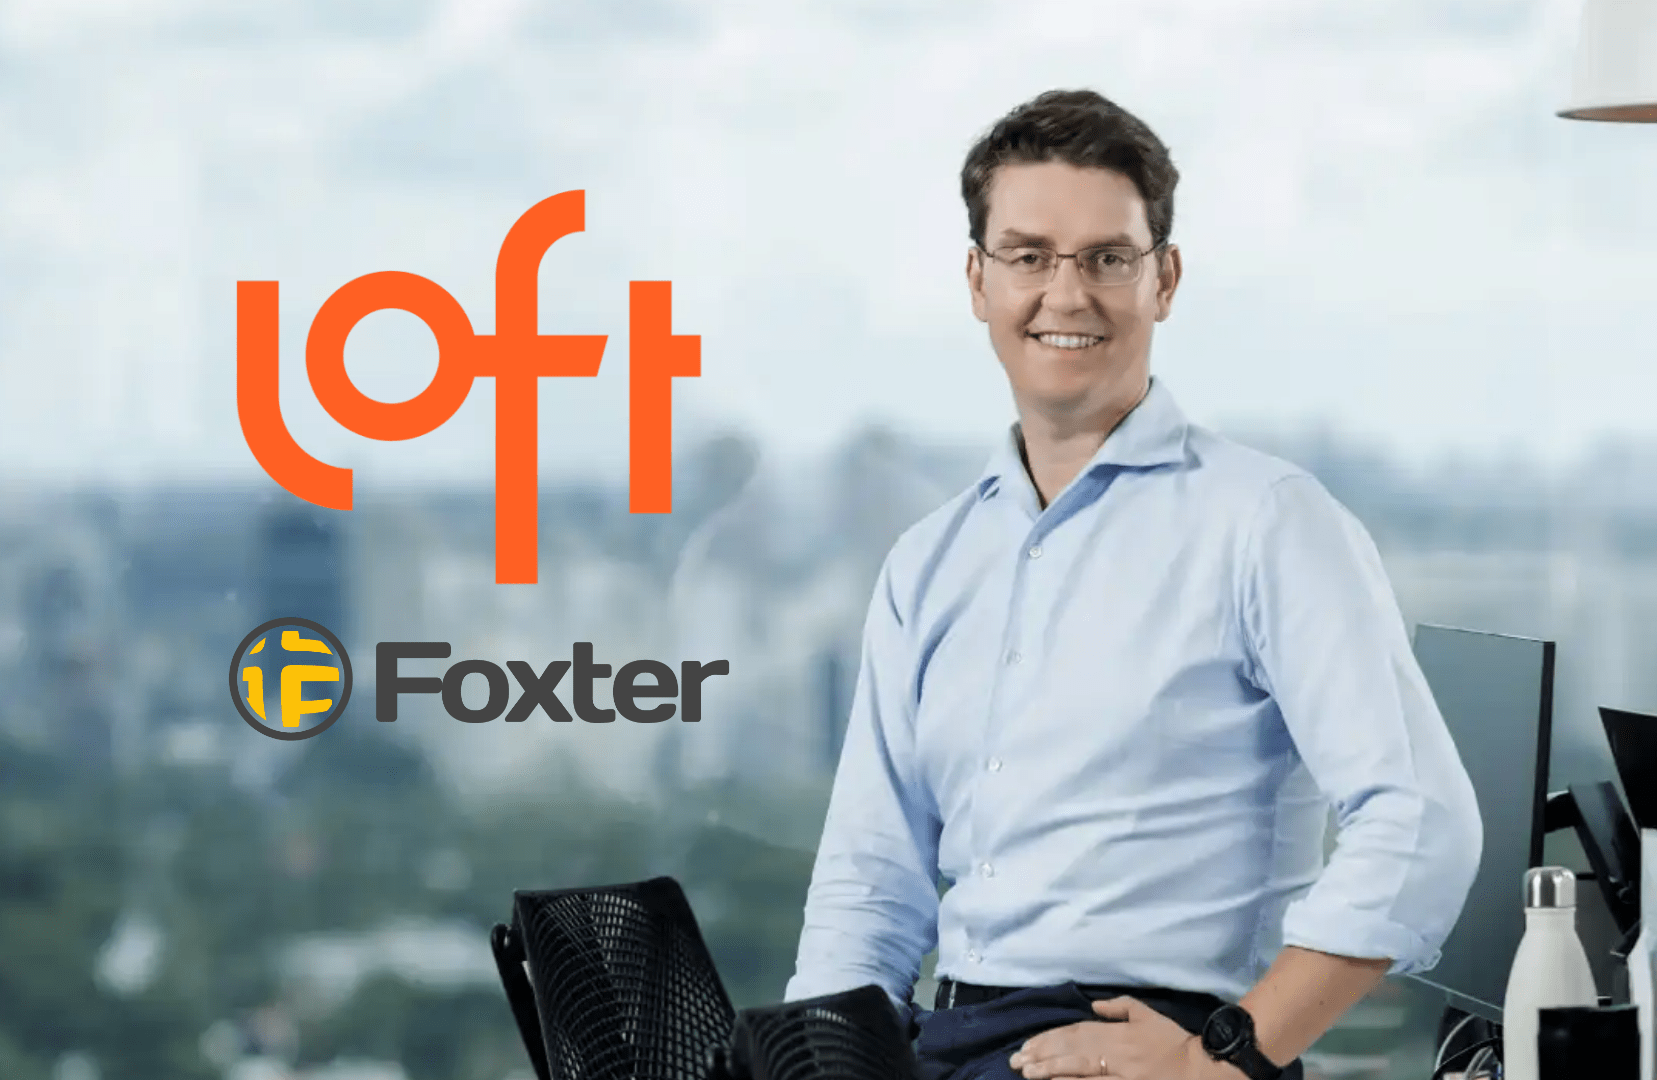 Loft compra Foxter